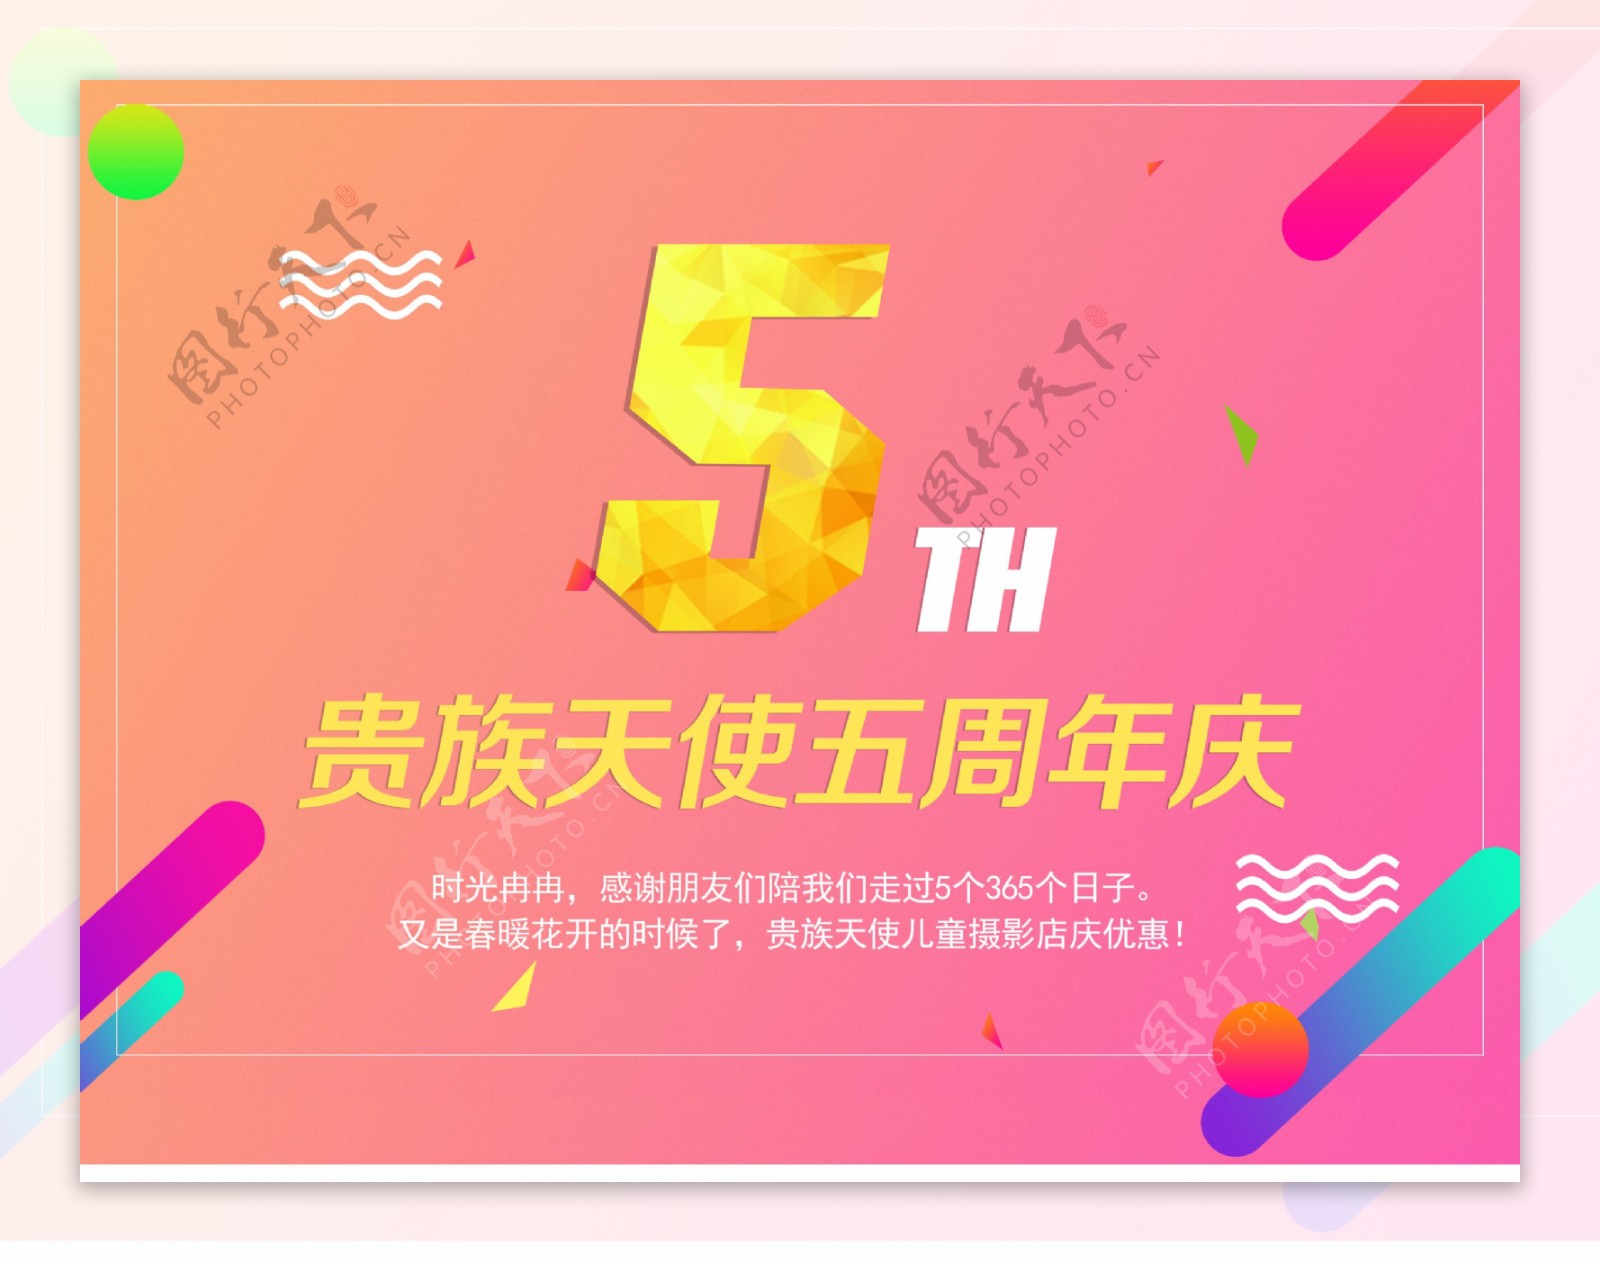 店庆周年宣传banner